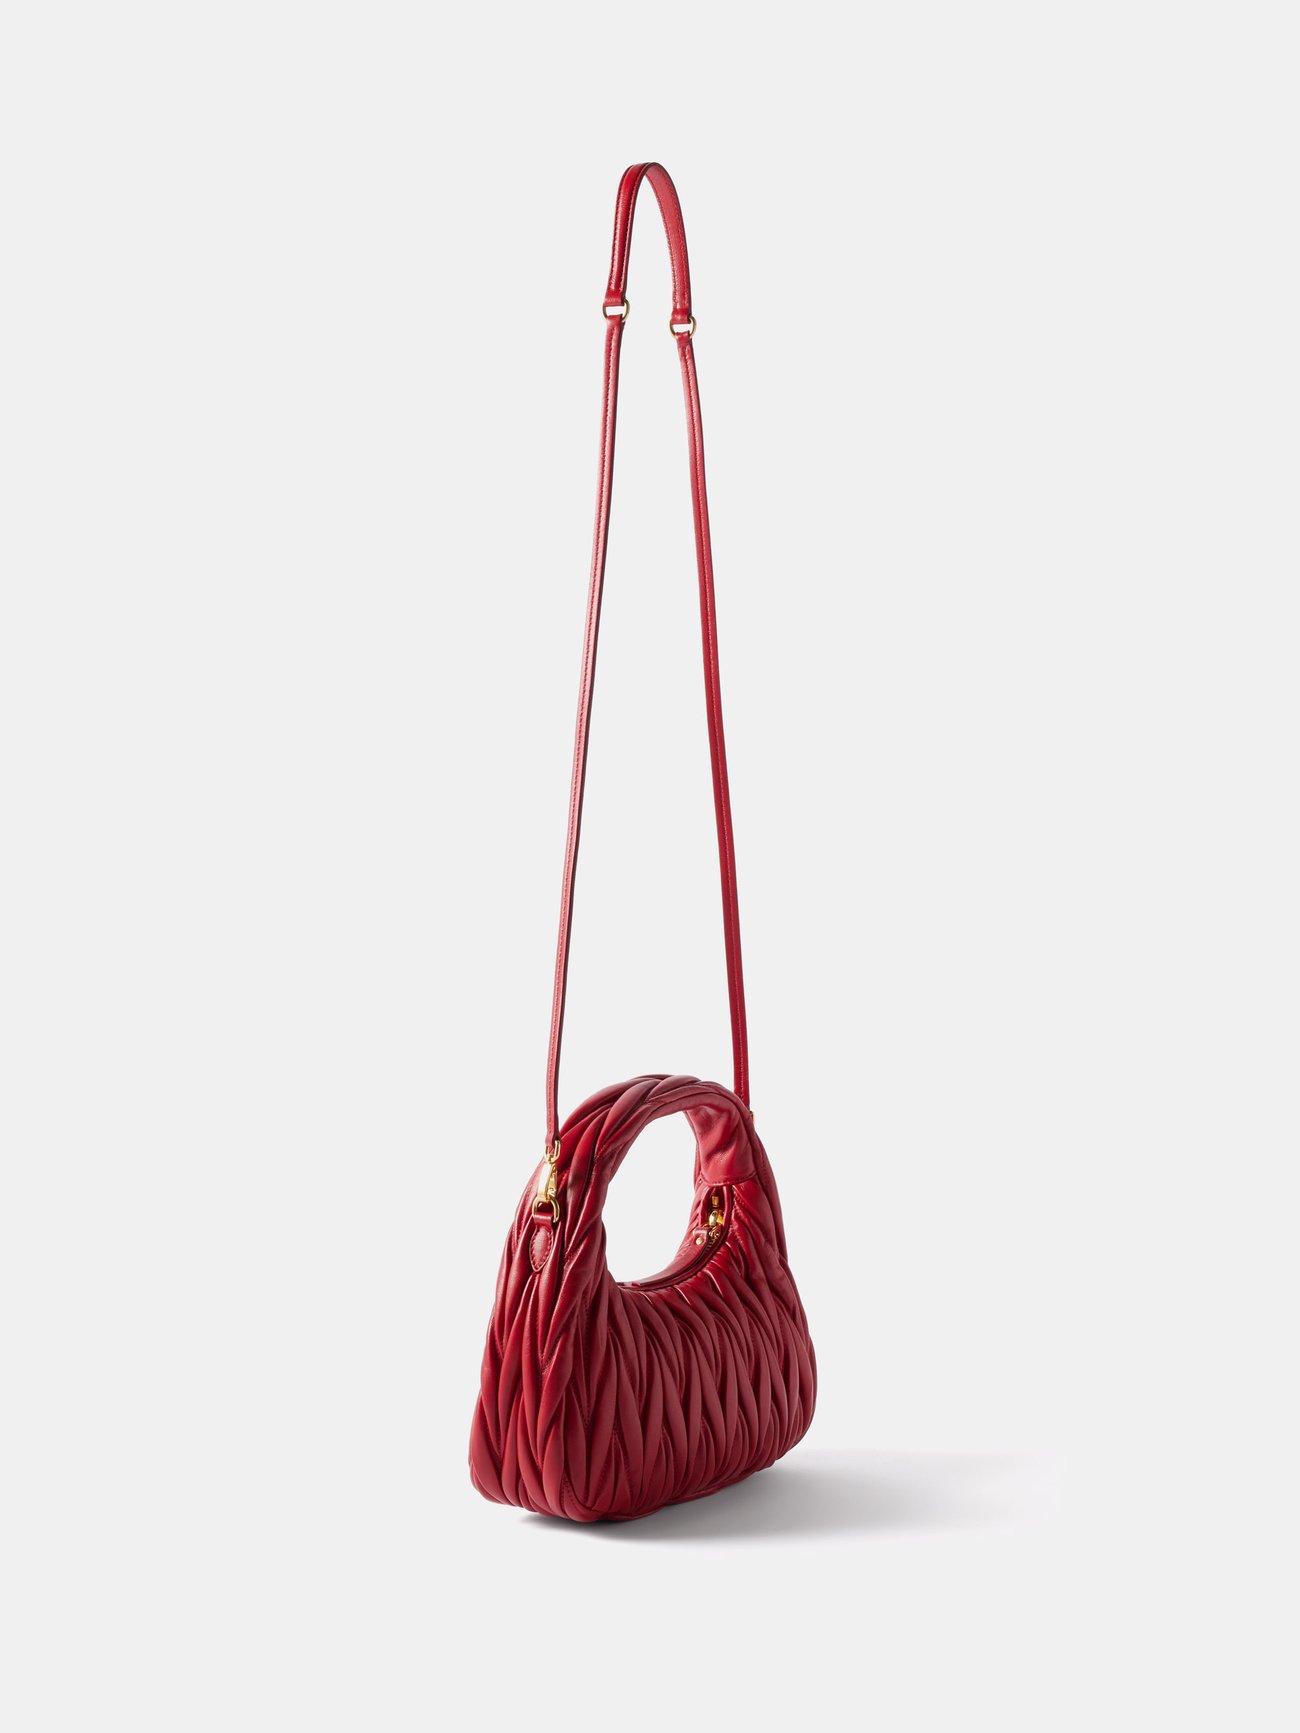 Red Wander mini matelassé-leather clutch bag, Miu Miu